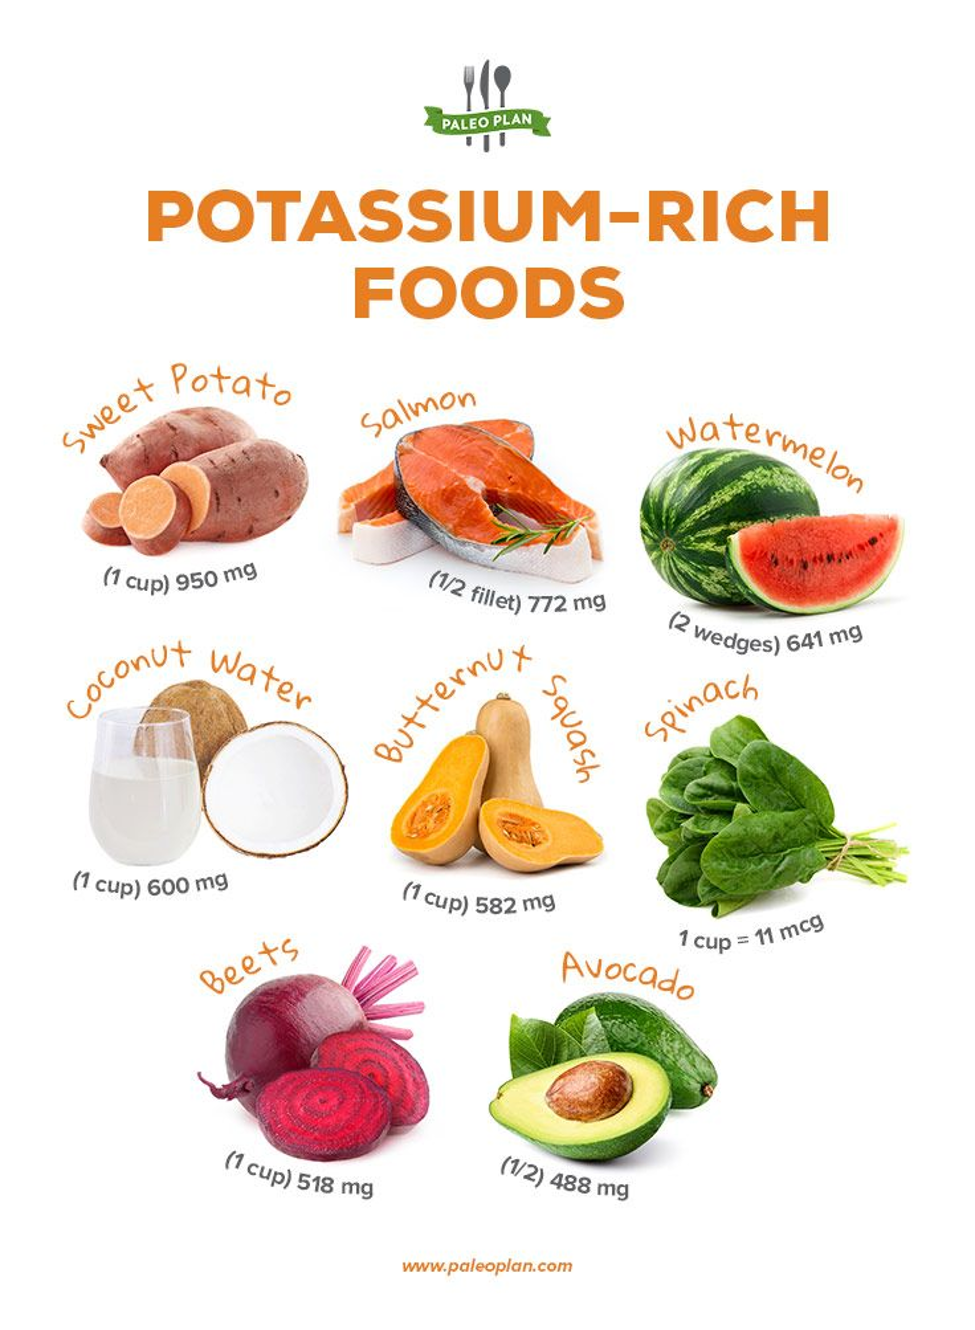 كل ما تحتاج إلى معرفته عن الأطعمة الغنية بالبوتاسيوم - مادة غير عضوية توجد في بعض الأطعمة - من المهم تناول الأطعمة الغنية بالبوتاسيوم - البوتاسيوم